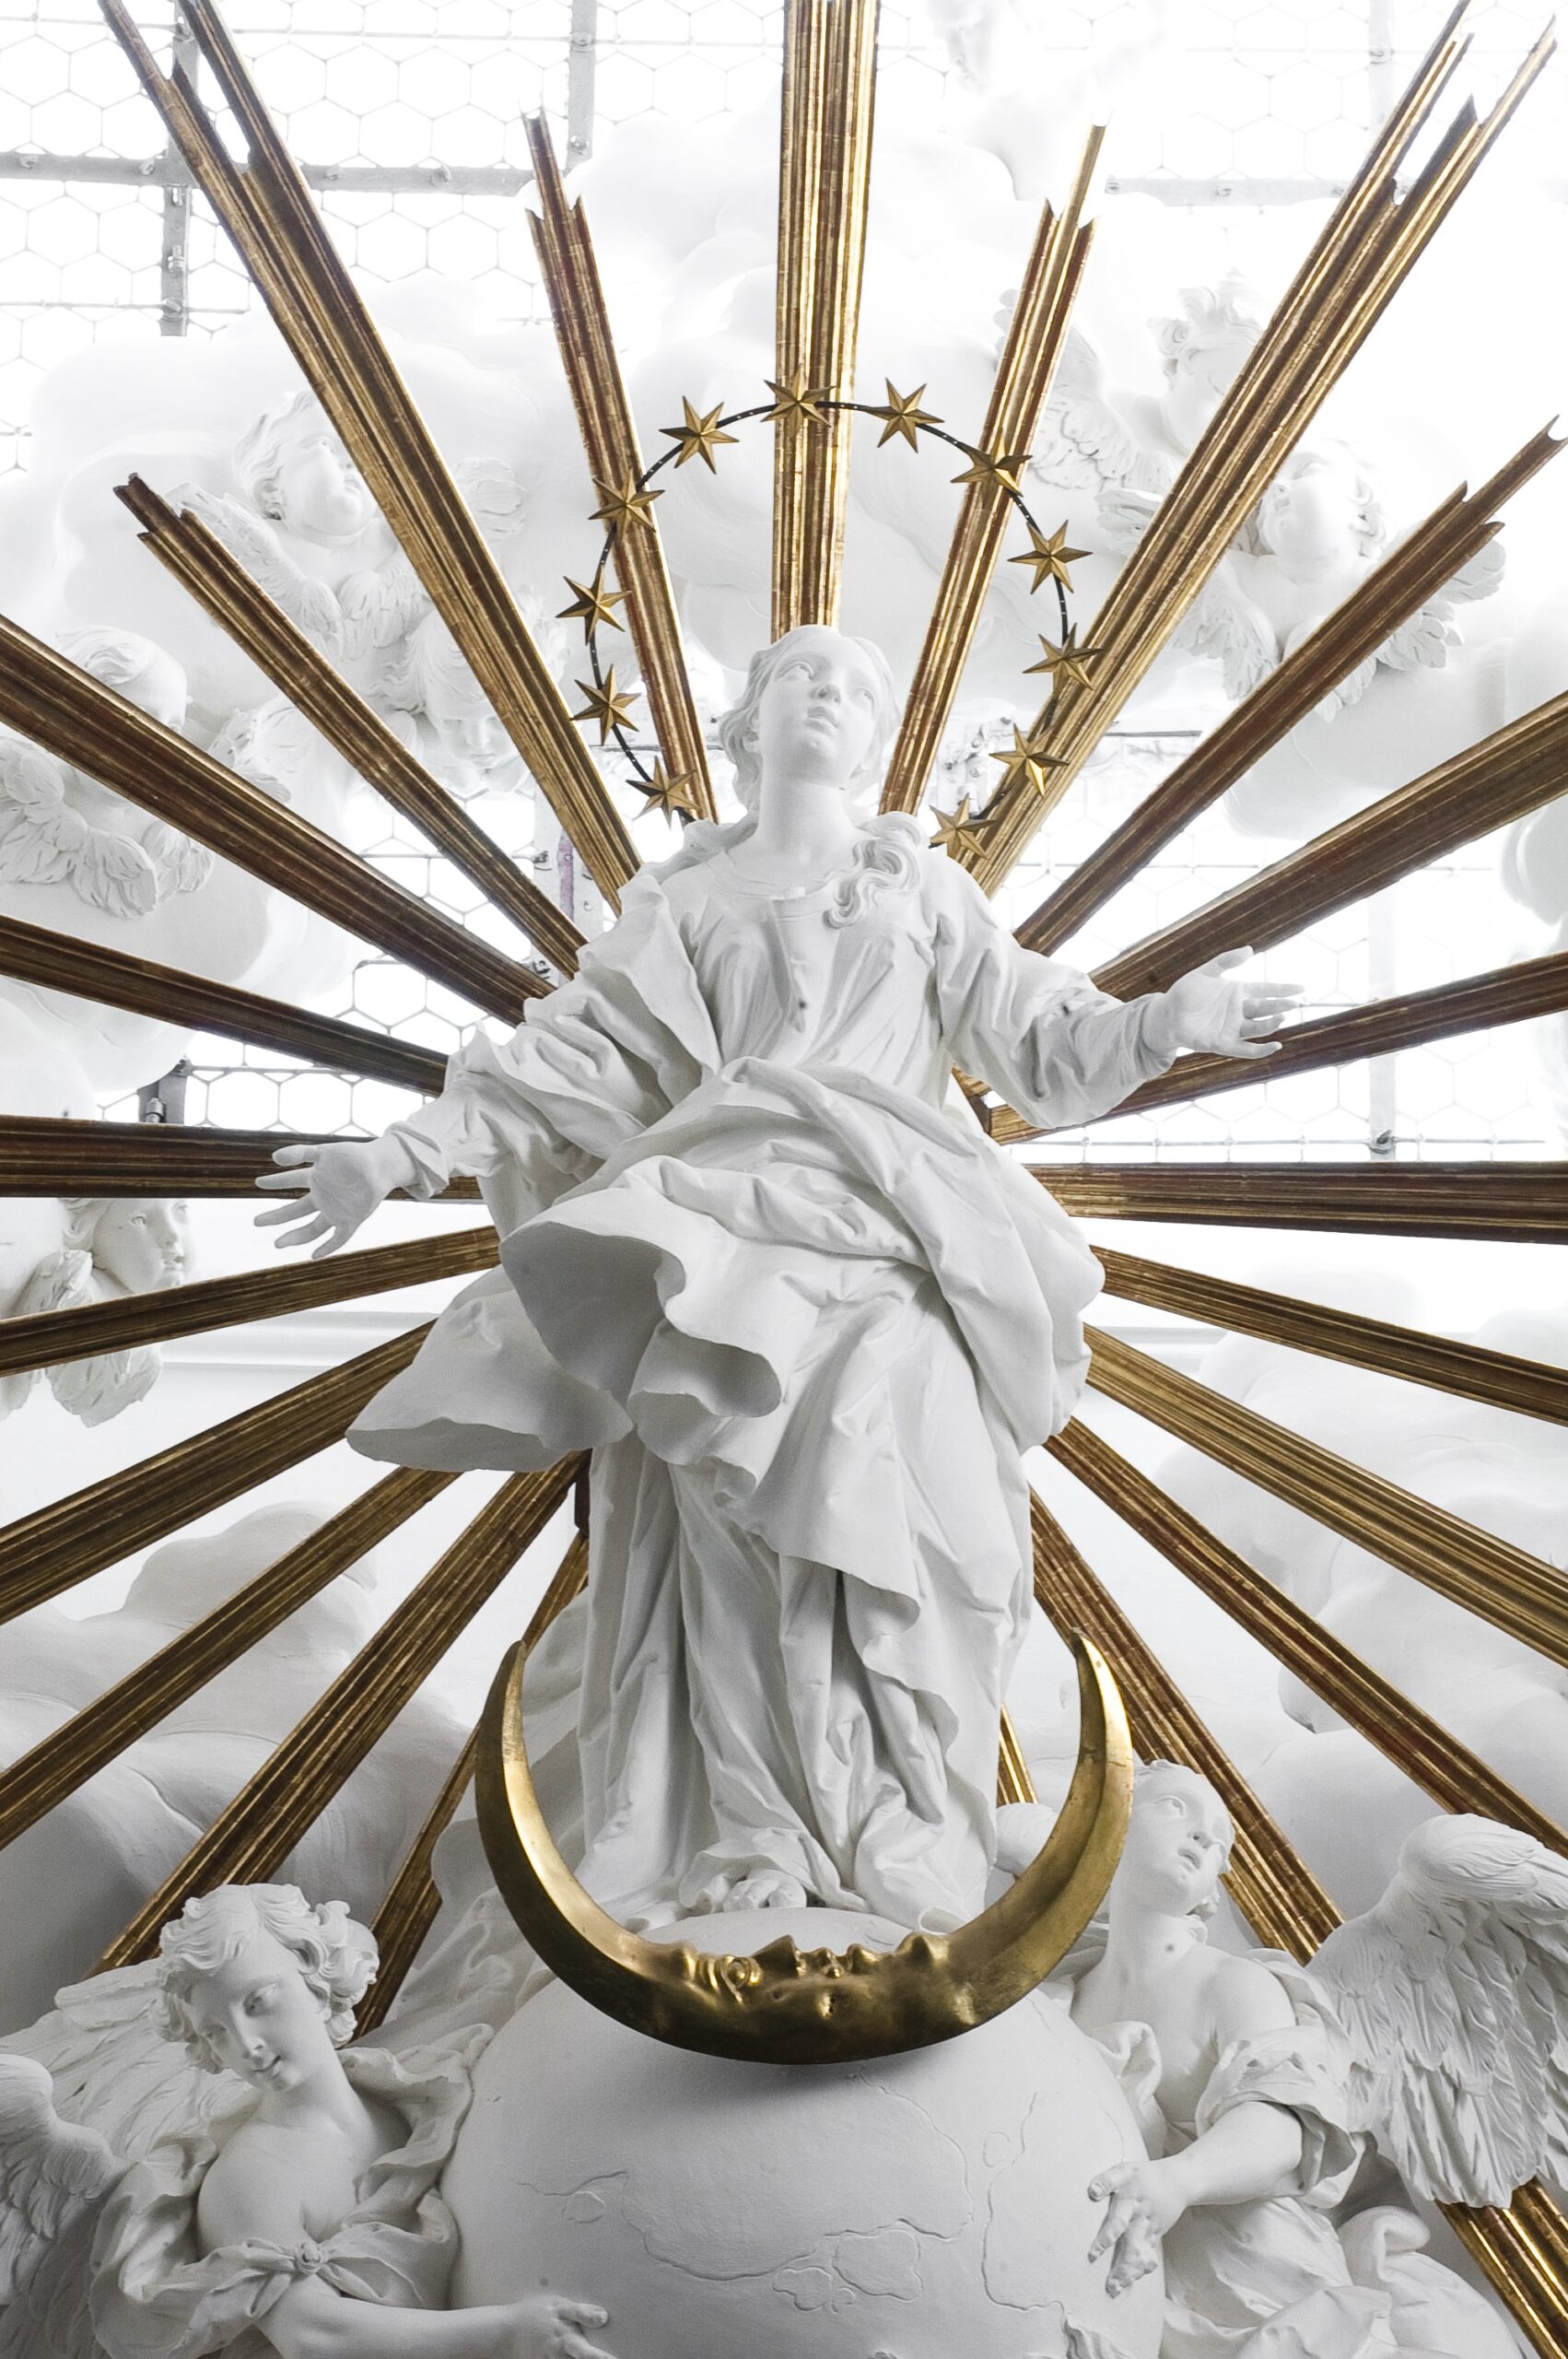 Stuckglorie der Maria Immaculata